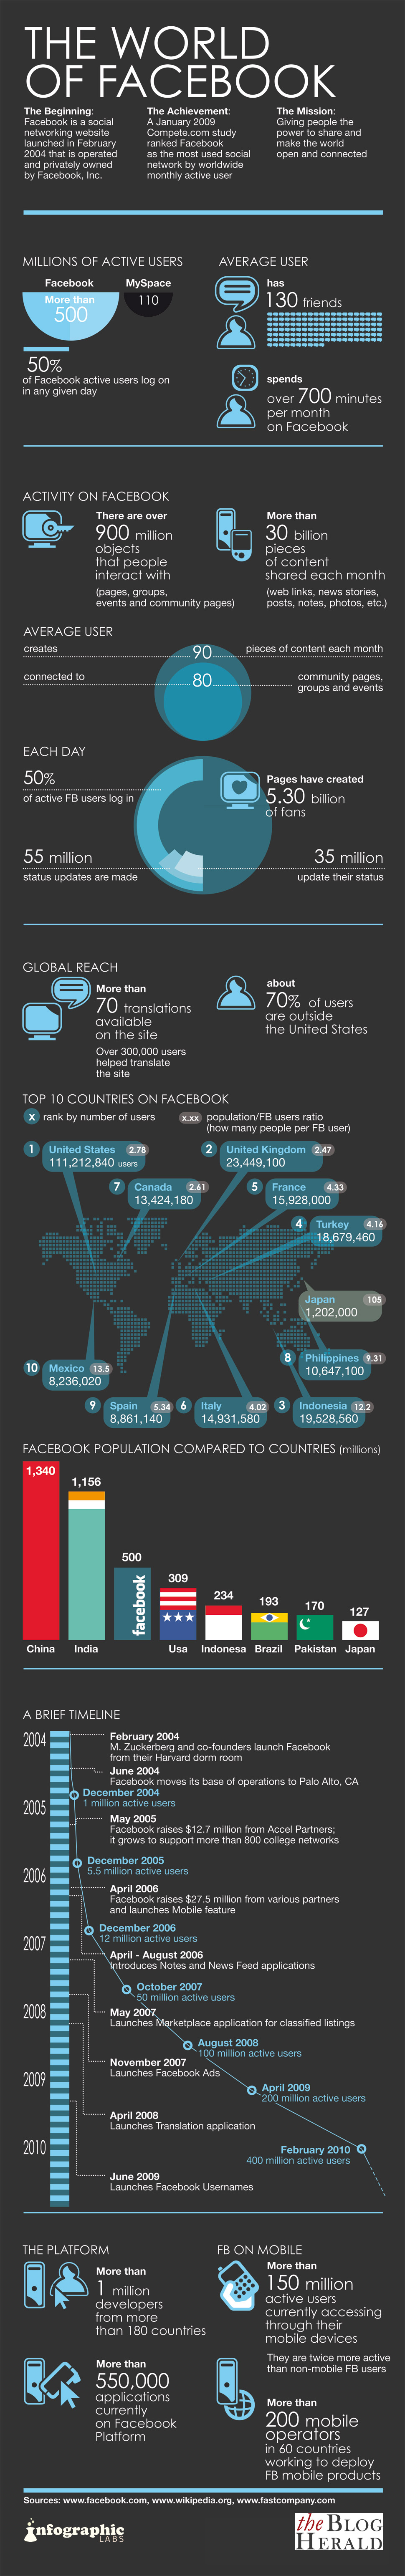 facebook-statistics